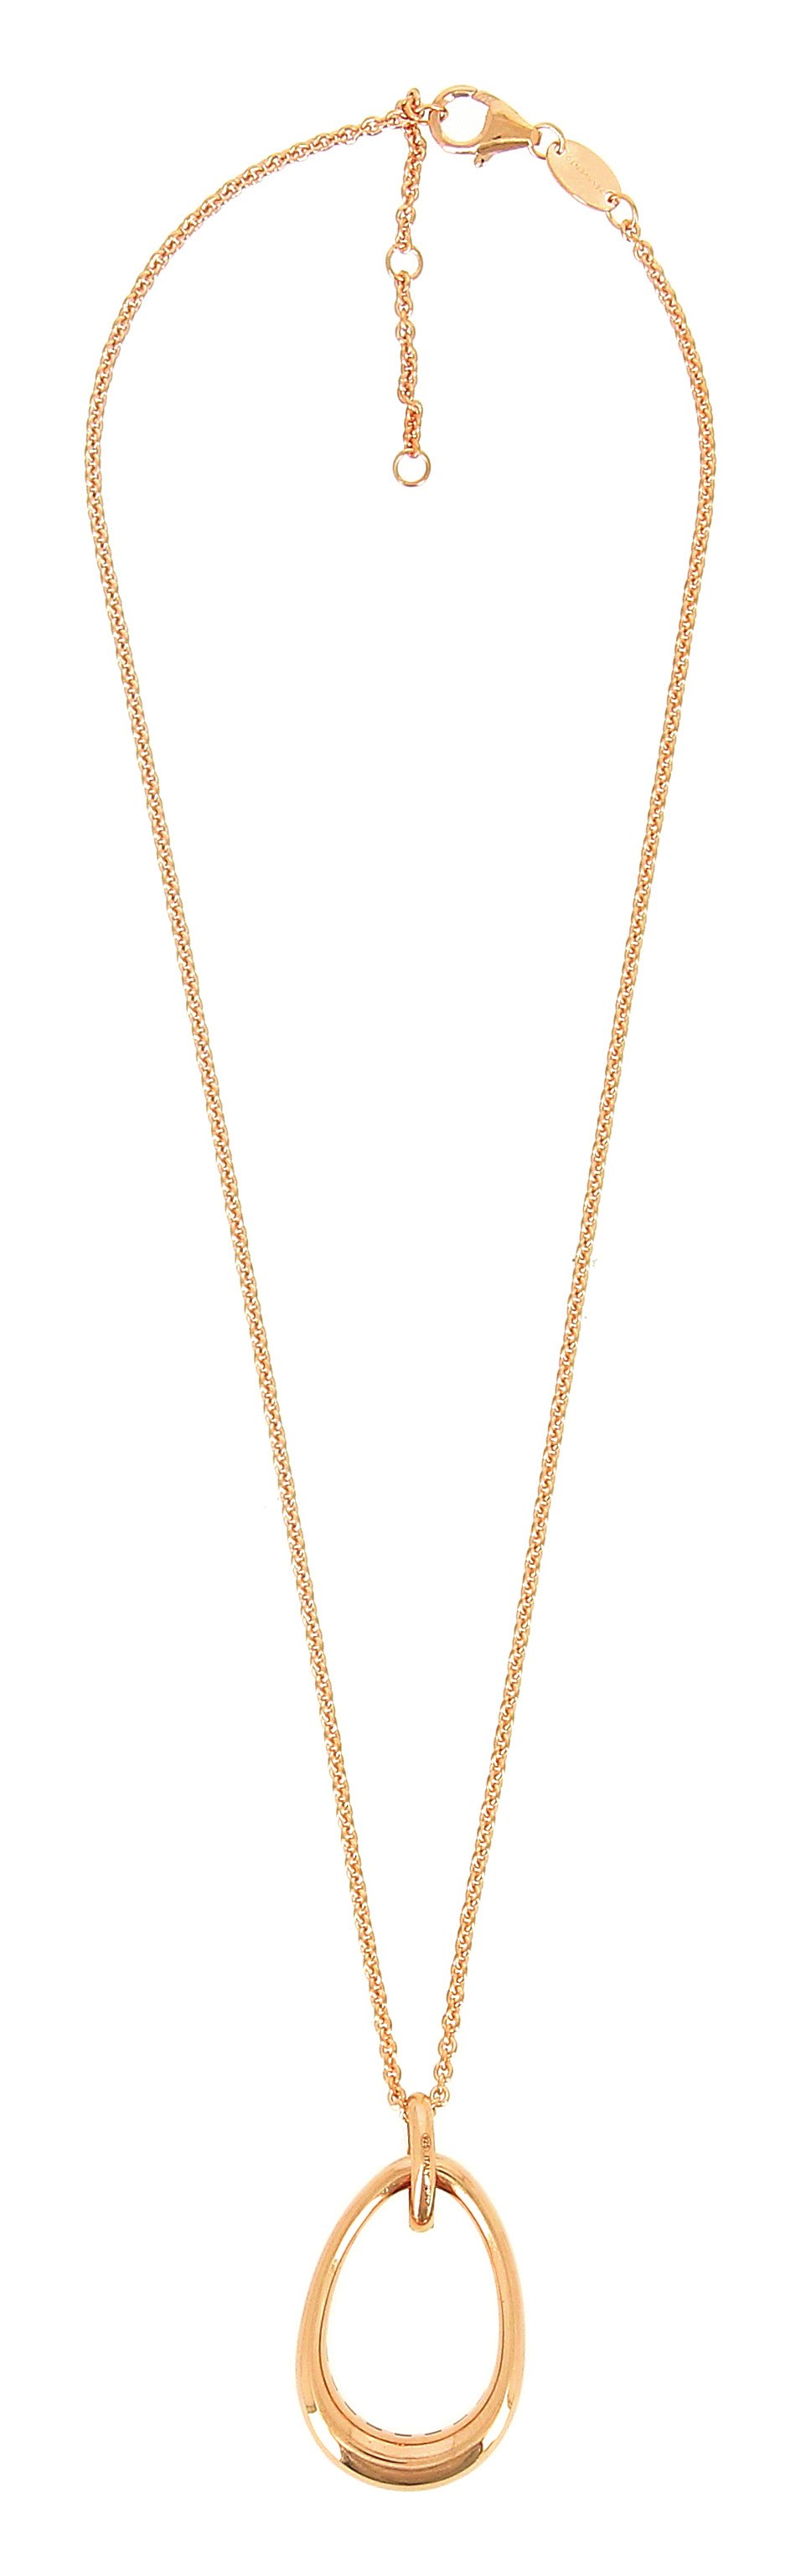 Elegance Elliptical Pendant Necklace 18k Yellow Vermeil